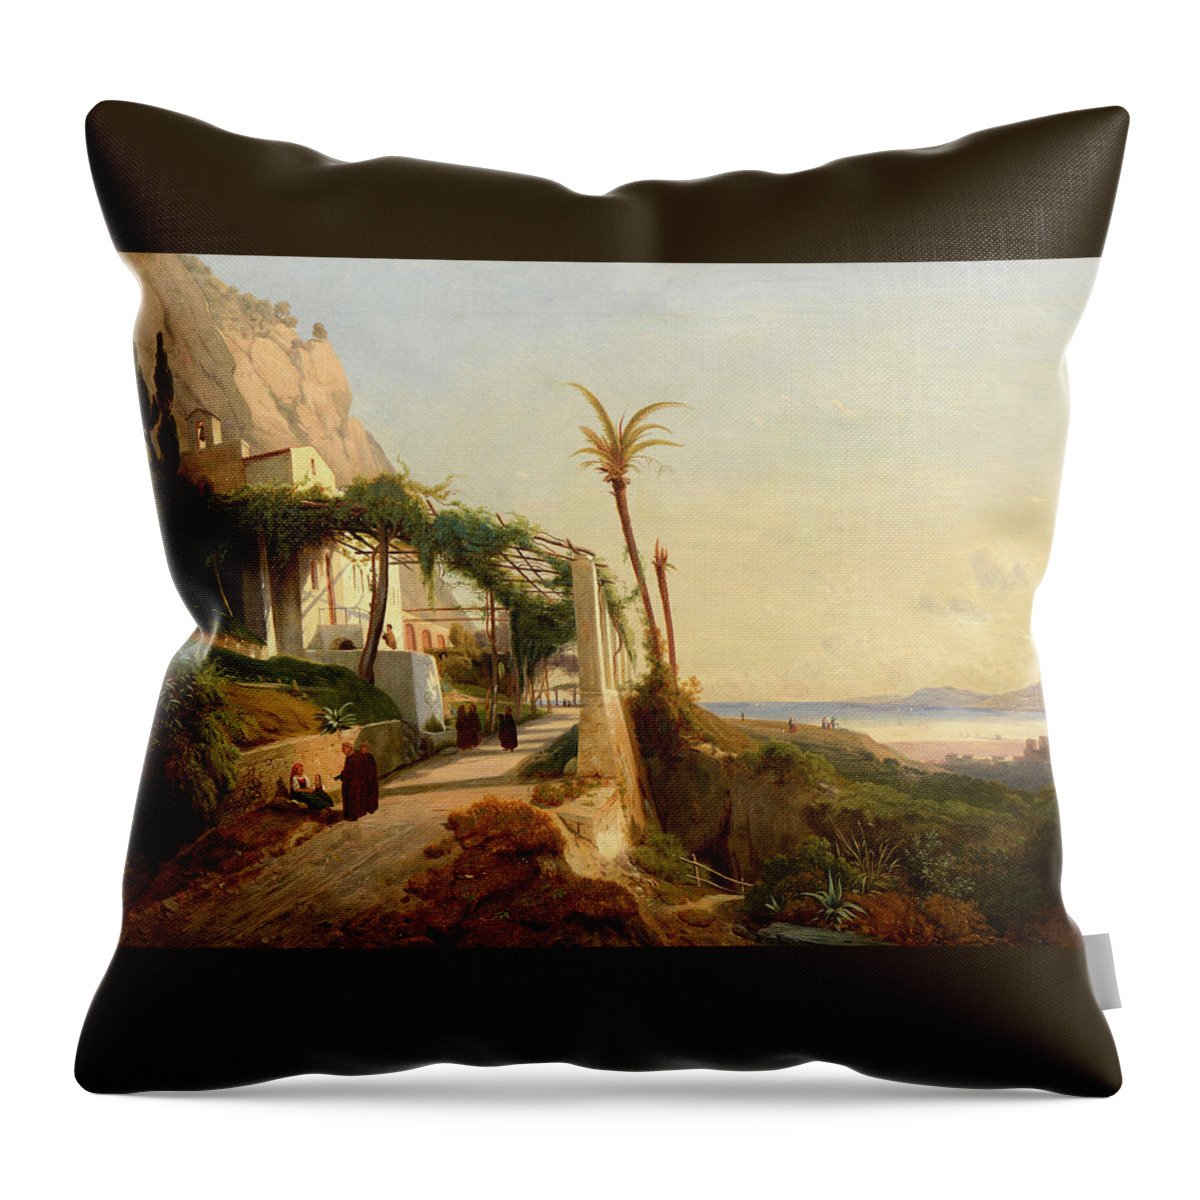 Auguste Lapito (1803-1874) Paysage De La Côte Amalfitaine Avec Des Moines Toile Rentoilée Throw Pillow featuring the painting Paysage by MotionAge Designs